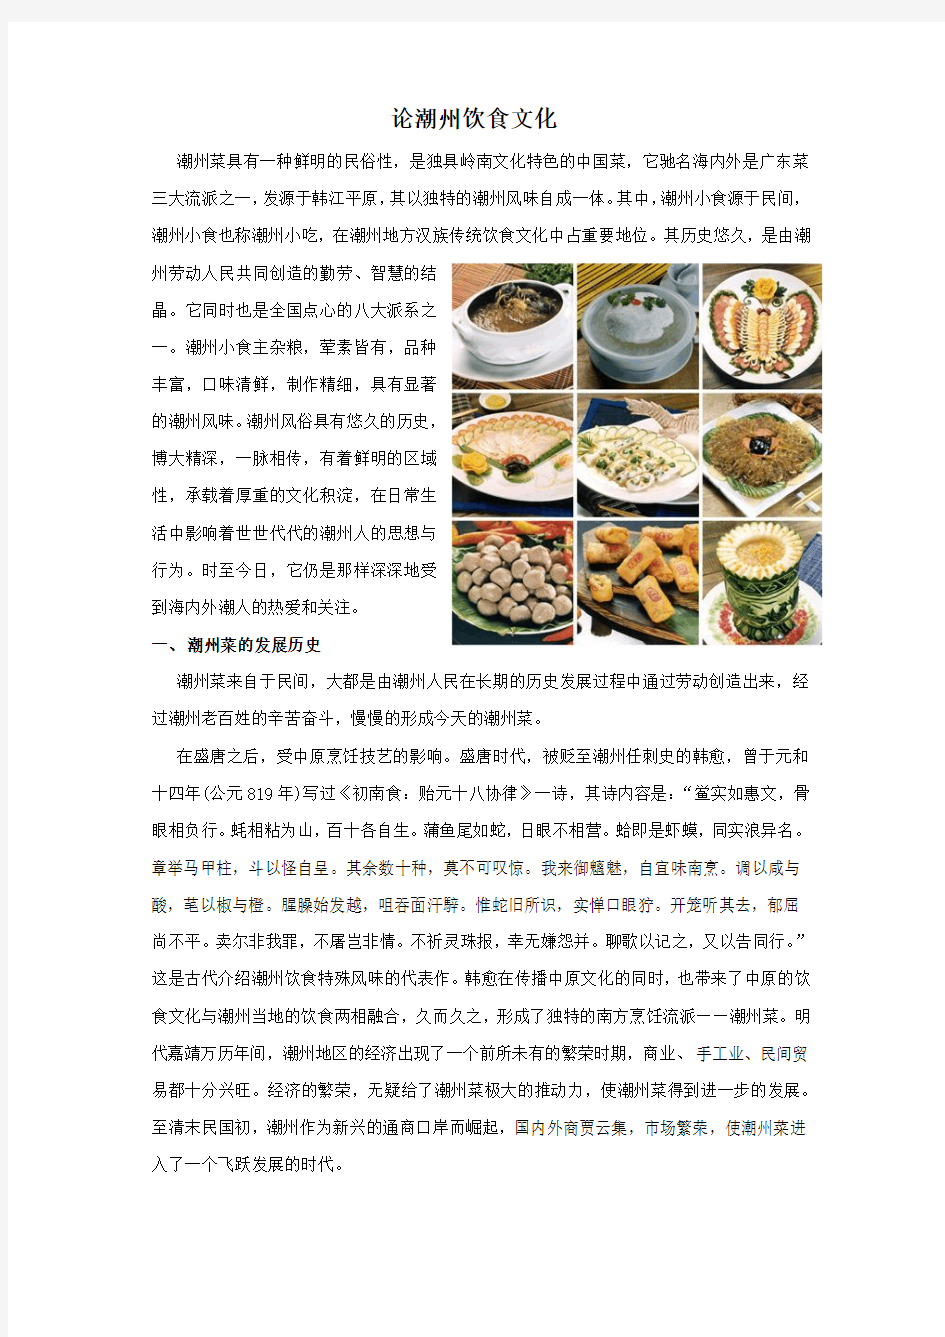 潮州饮食文化